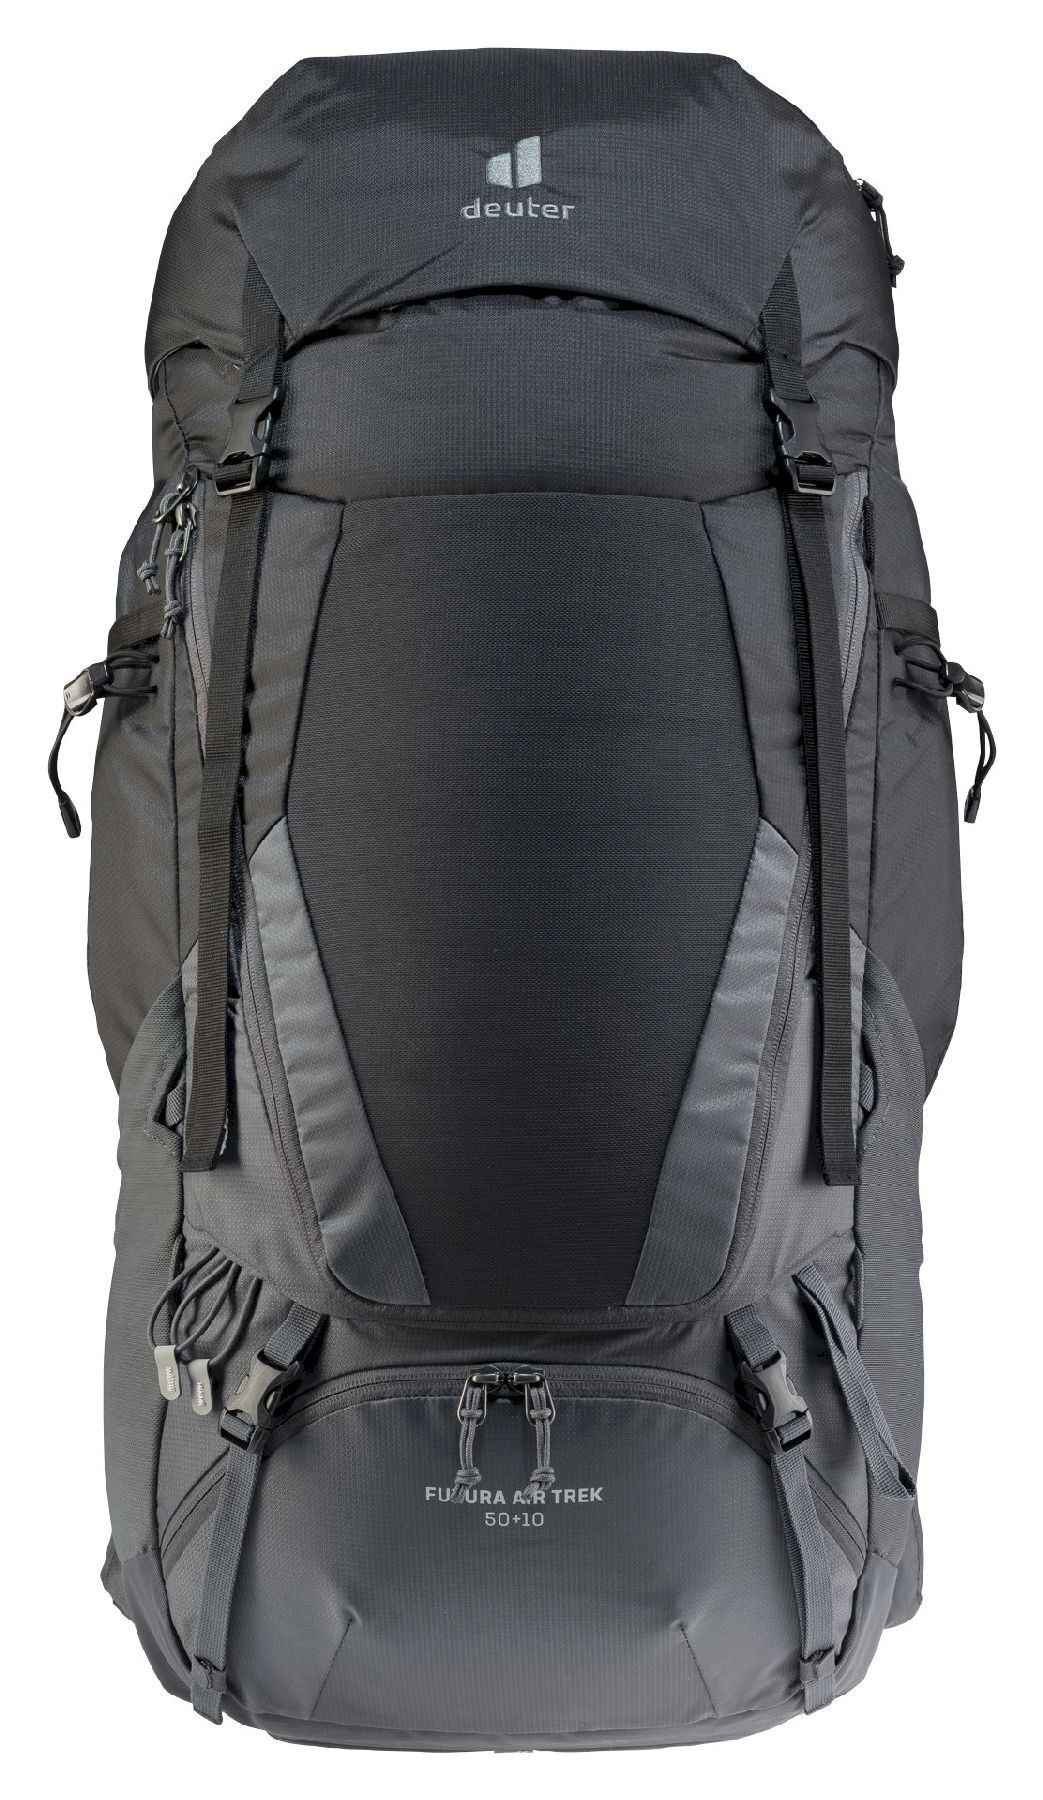 Deuter Futura Air Trek 50 + 10 - Hiking backpack - Men's